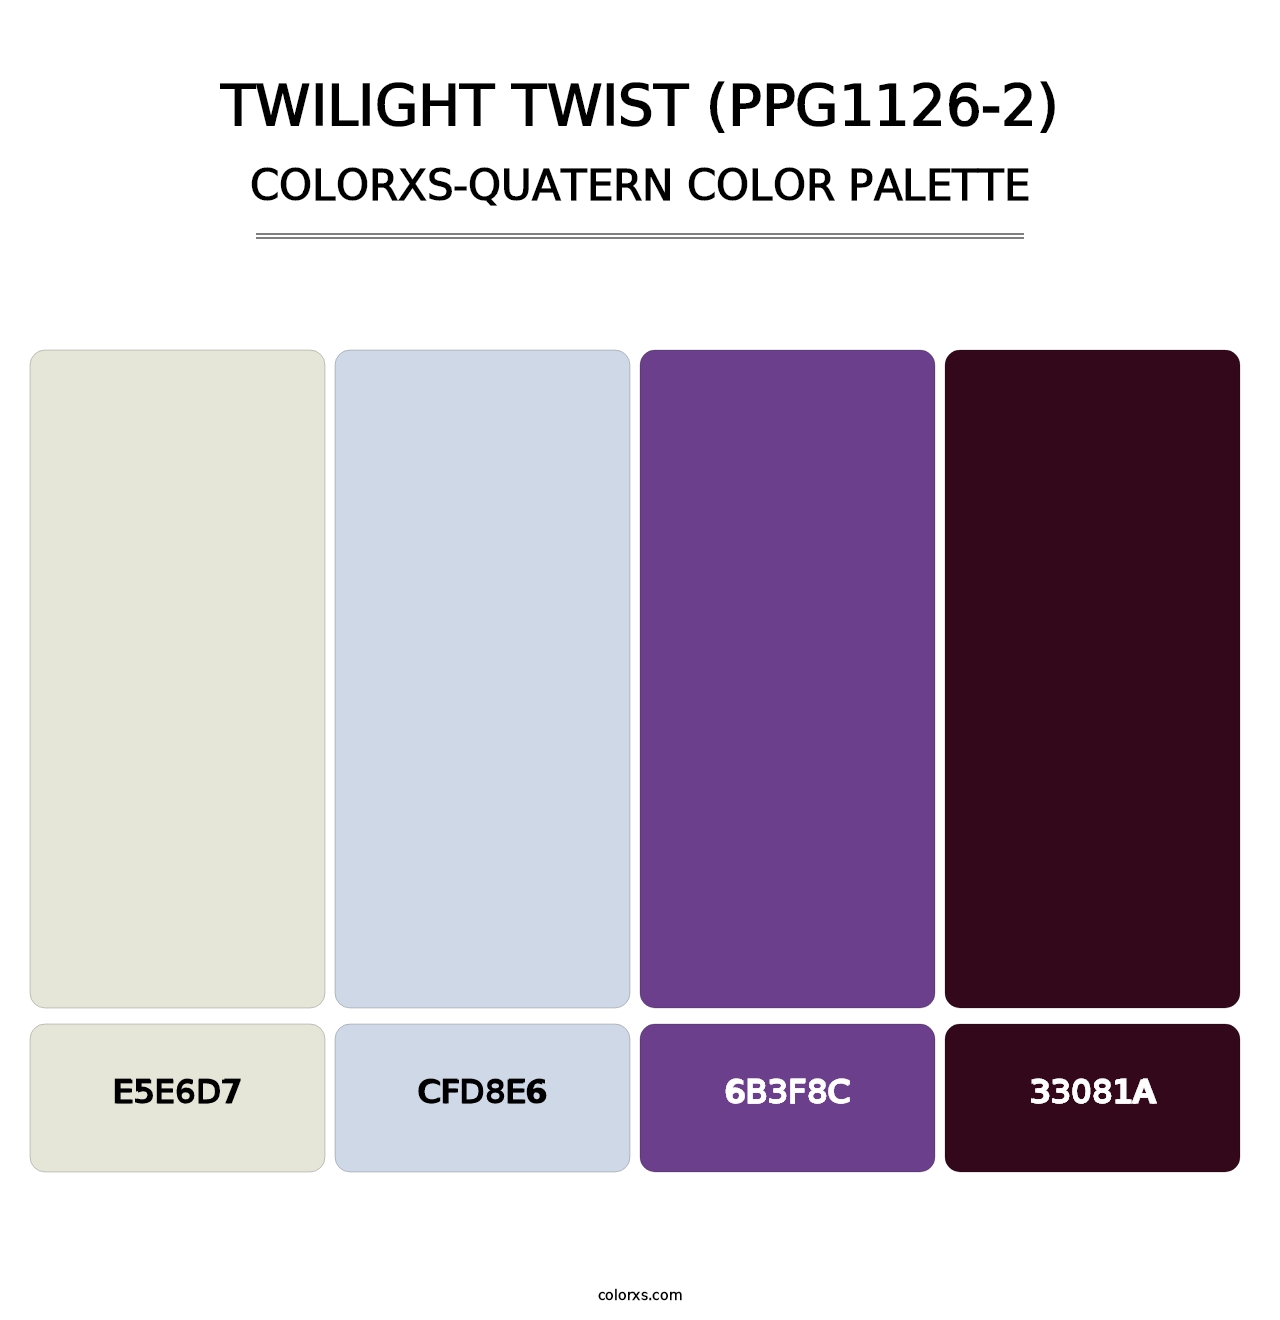 Twilight Twist (PPG1126-2) - Colorxs Quatern Palette